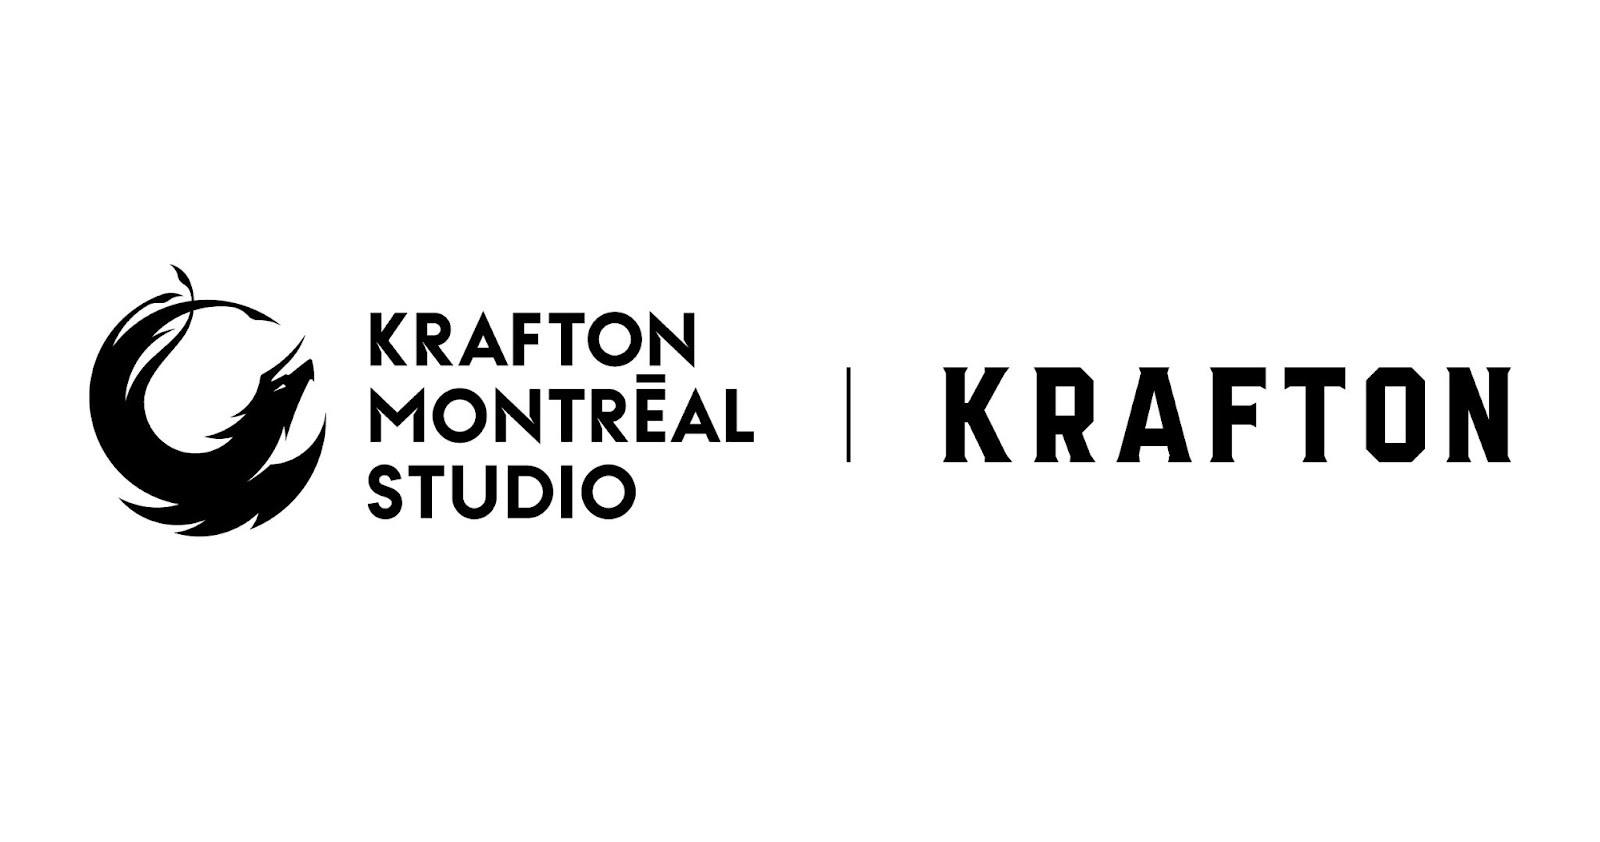 Krafton opened a AAA game studio in Canada